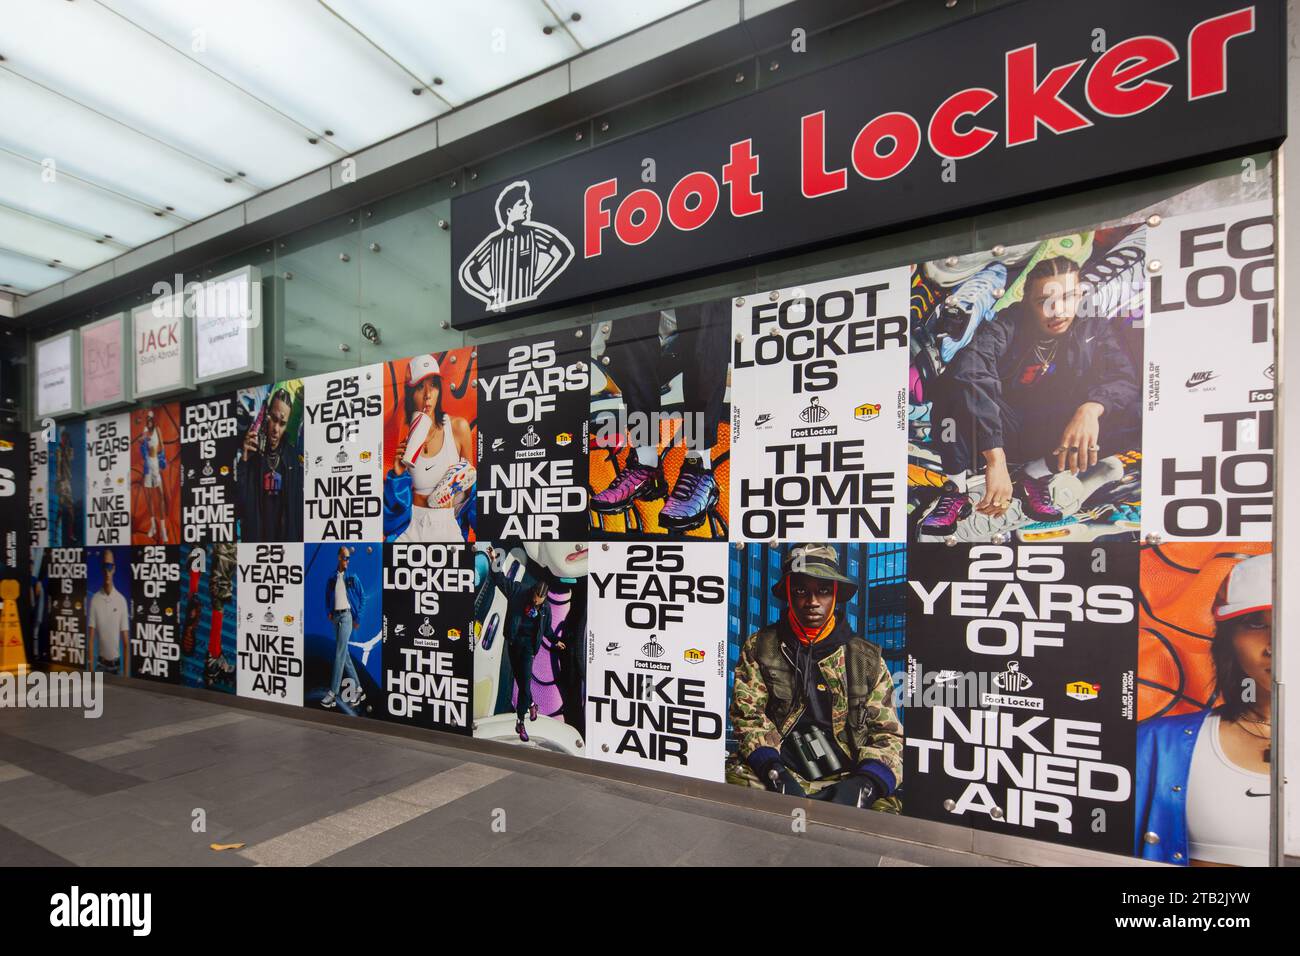 Foot Locker che promuove il 25° anniversario delle sneakers Nike TUNED Air con una serie di poster fotografici per attirare l'attenzione del pubblico per le vendite, Singapore. Foto Stock